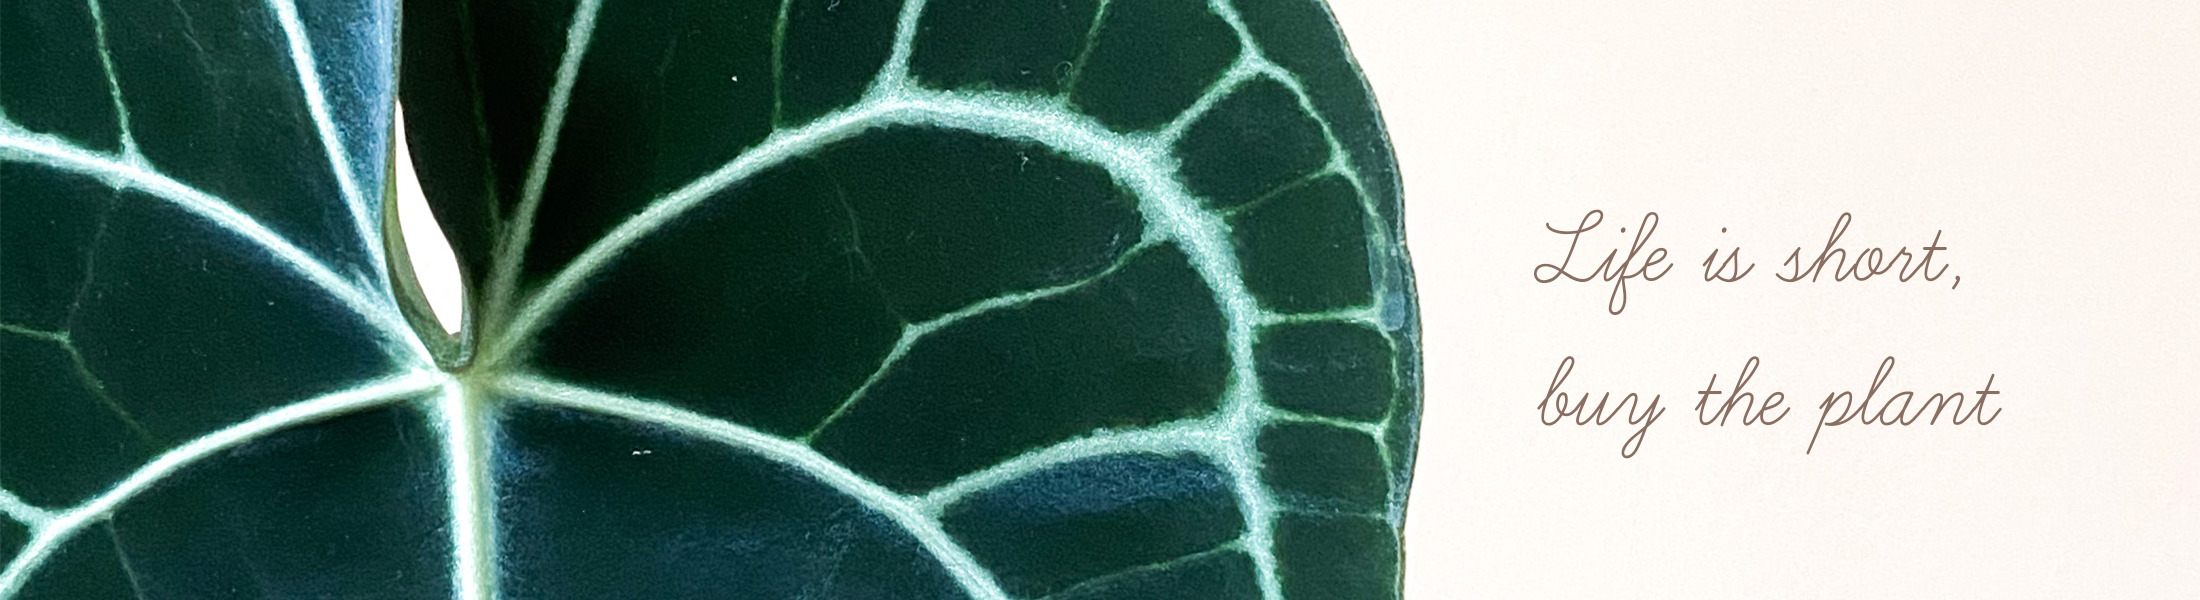 anthurium leaf